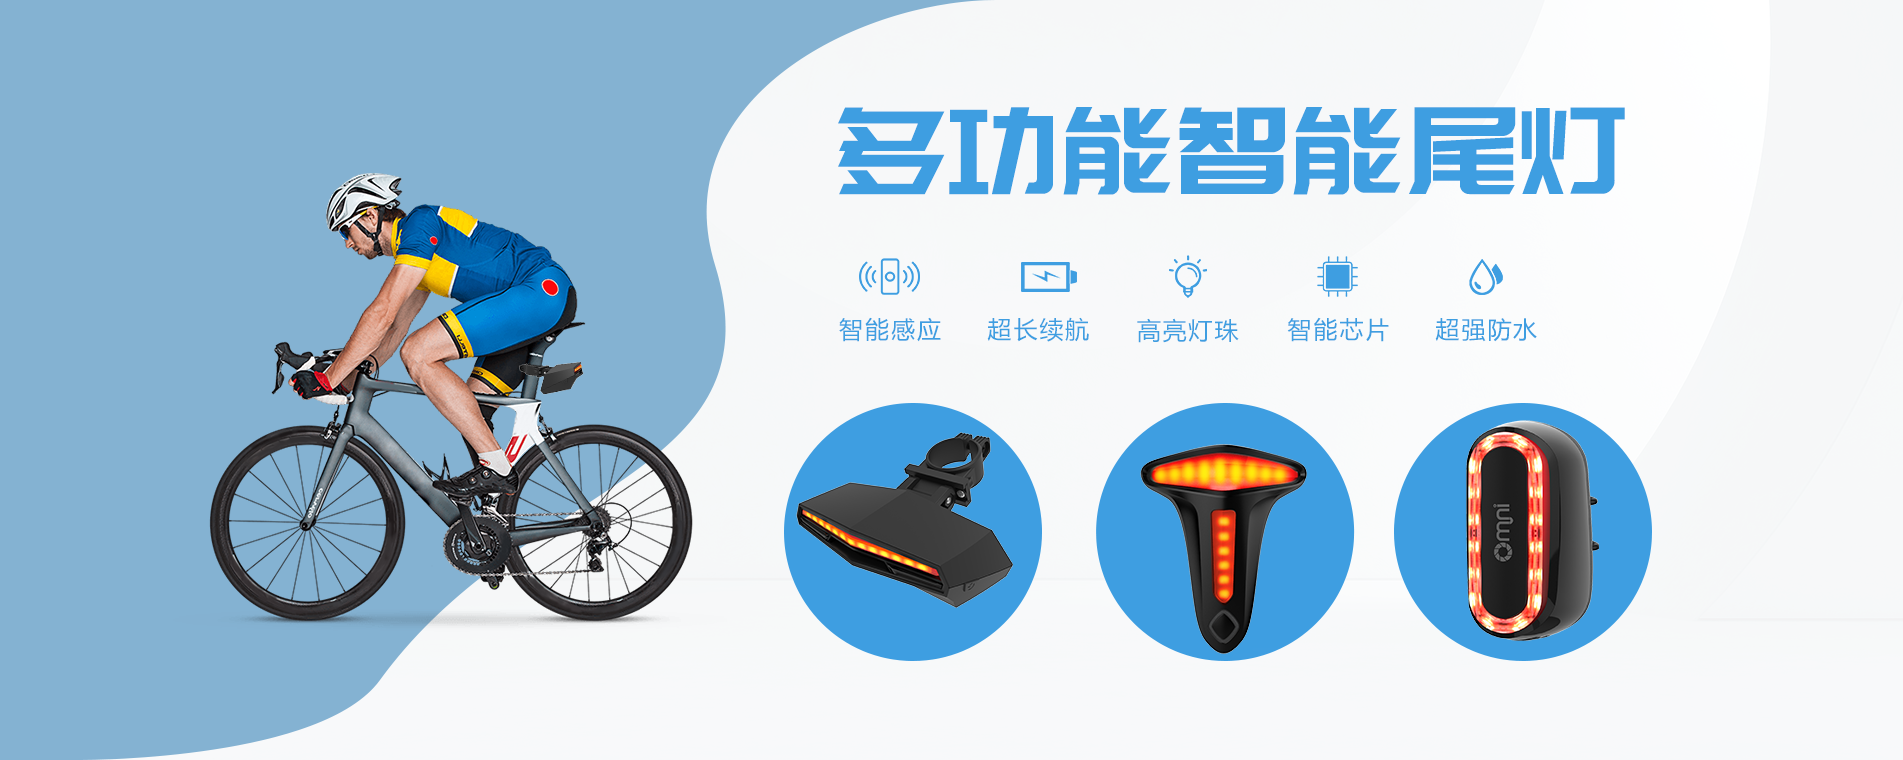 自行車尾燈,多功能智能尾燈,個人單車尾燈